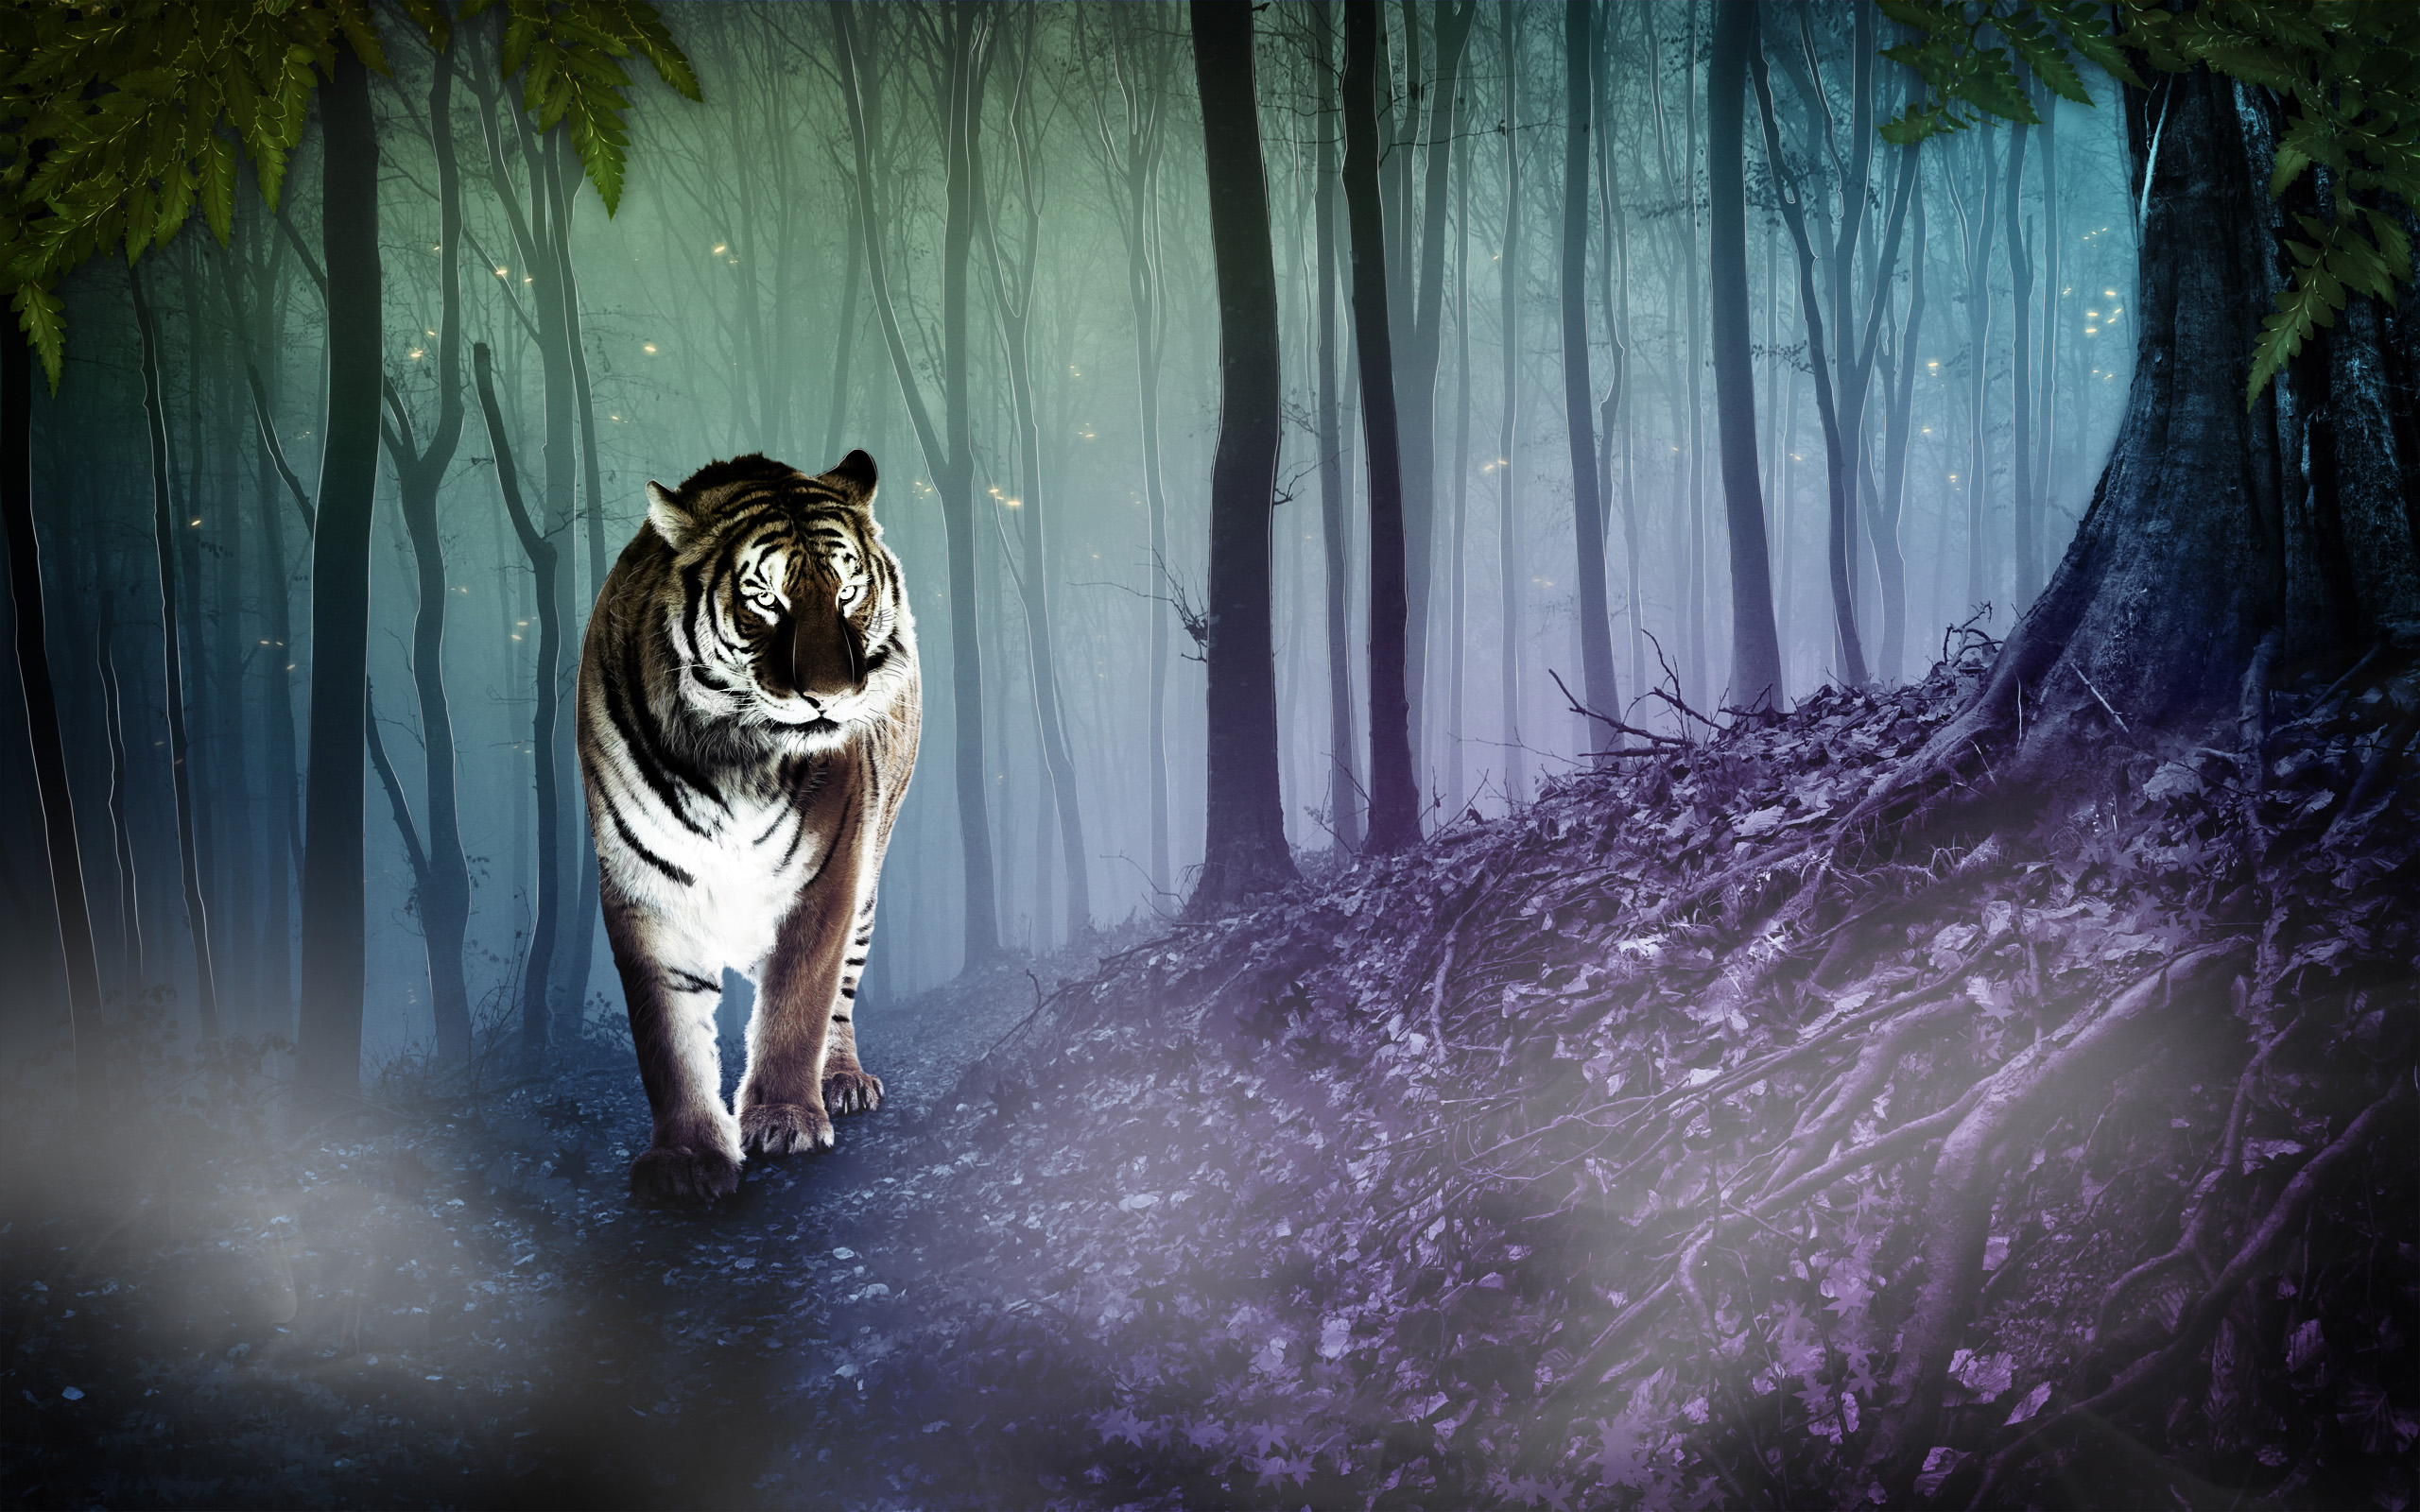 Descarga gratuita de fondo de pantalla para móvil de Cgi, Fantasía, Gatos, Animales, Tigre.